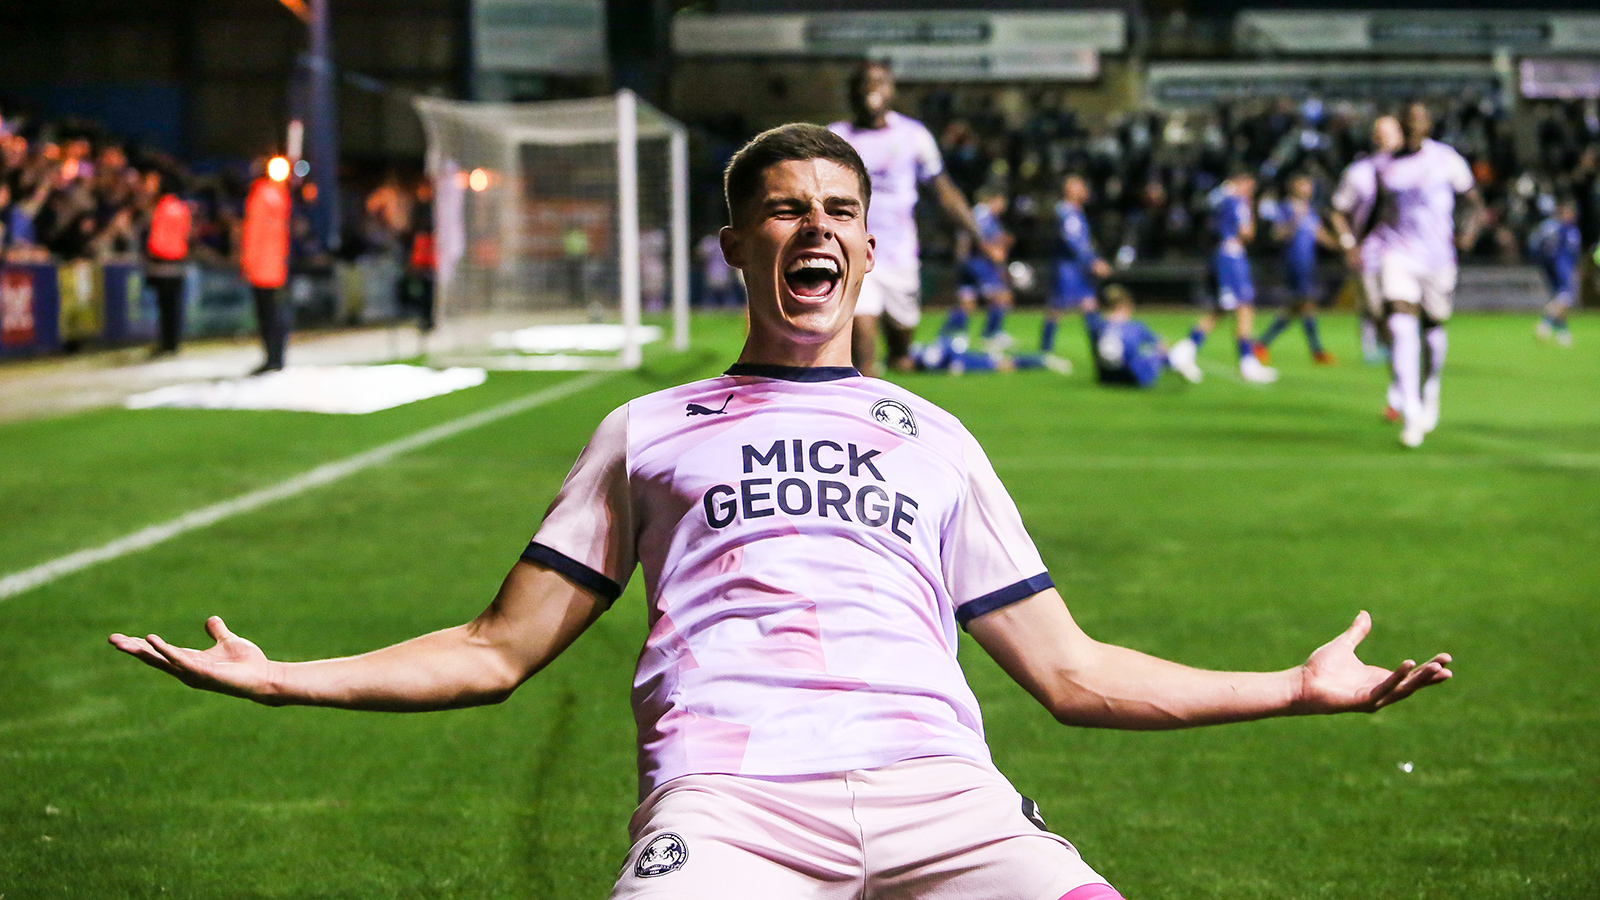 Ronnie Edwards celebrates scoring his goal at Carlisle United